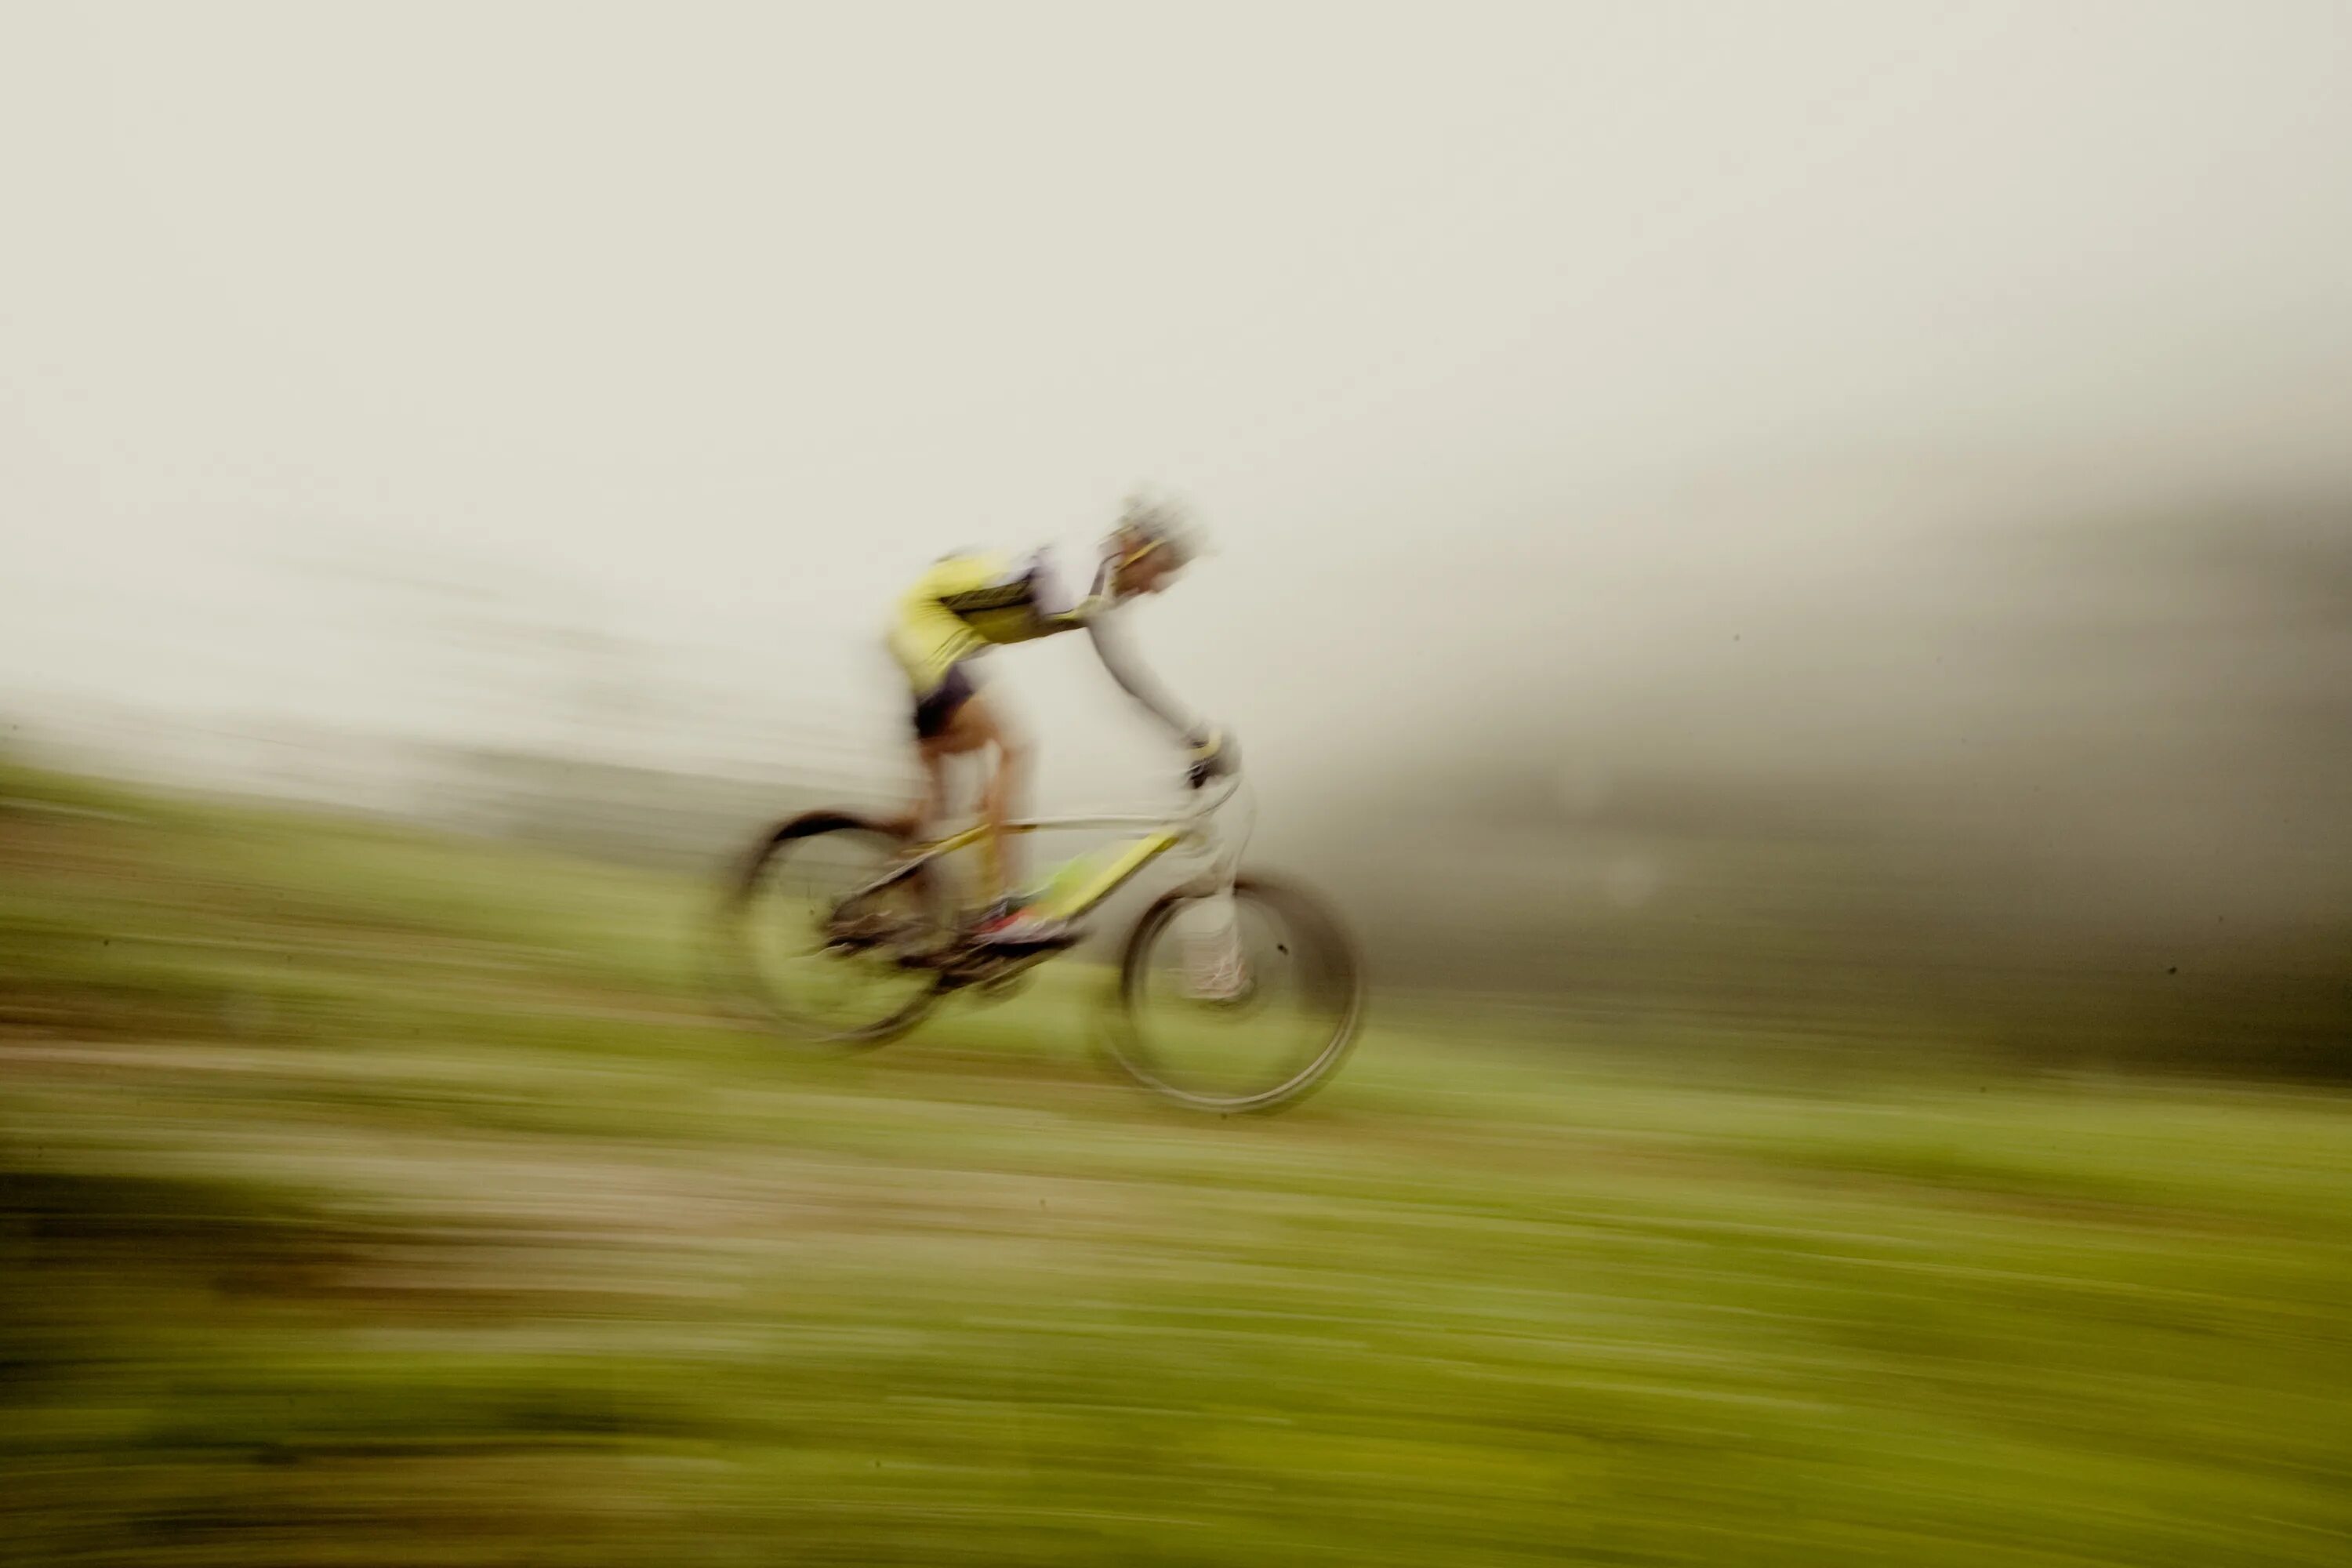 Велосипед скорость на горах. Велоспорт в горах. Спуск с горы на велосипеде. Transalp велогонка. Экстремальный спуск на велосипеде.